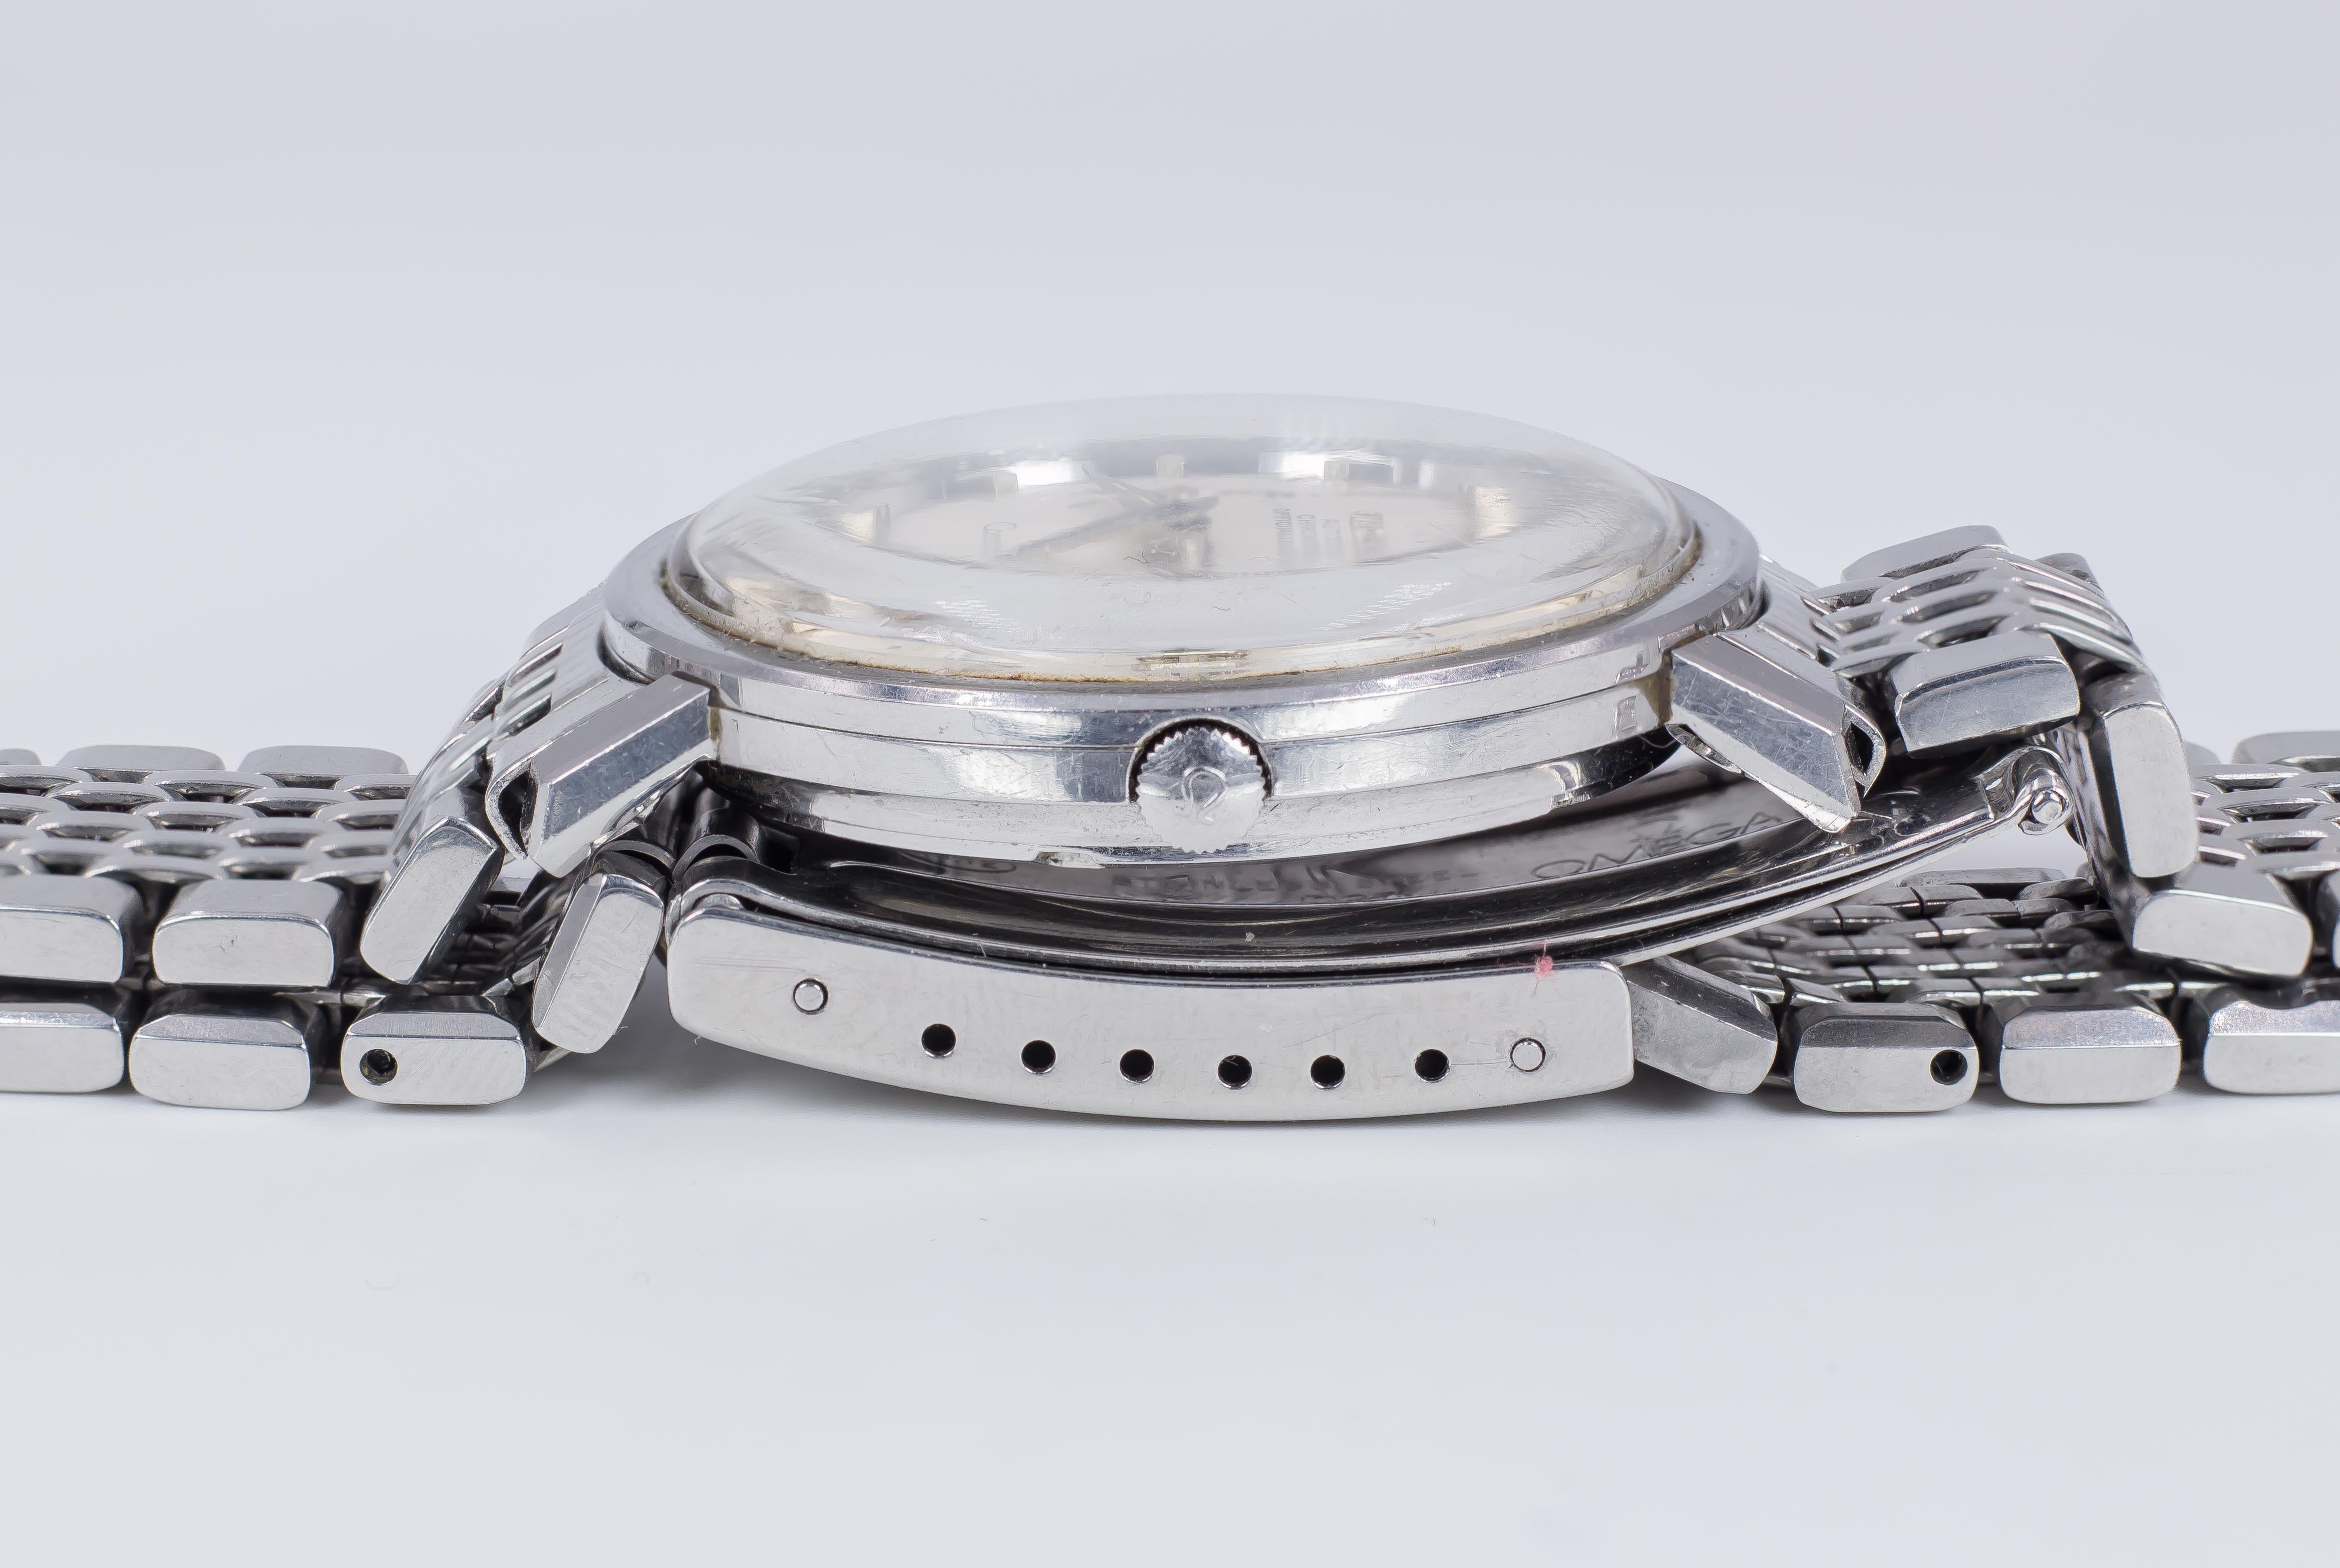 Montre-bracelet automatique Omega Constellation en acier, datant de 1966. 
Le bracelet de la montre est d'origine Omega.

Référence : st 168.004
Mouvement : Omega 561 

MARQUE
Omega (gamme de produits :